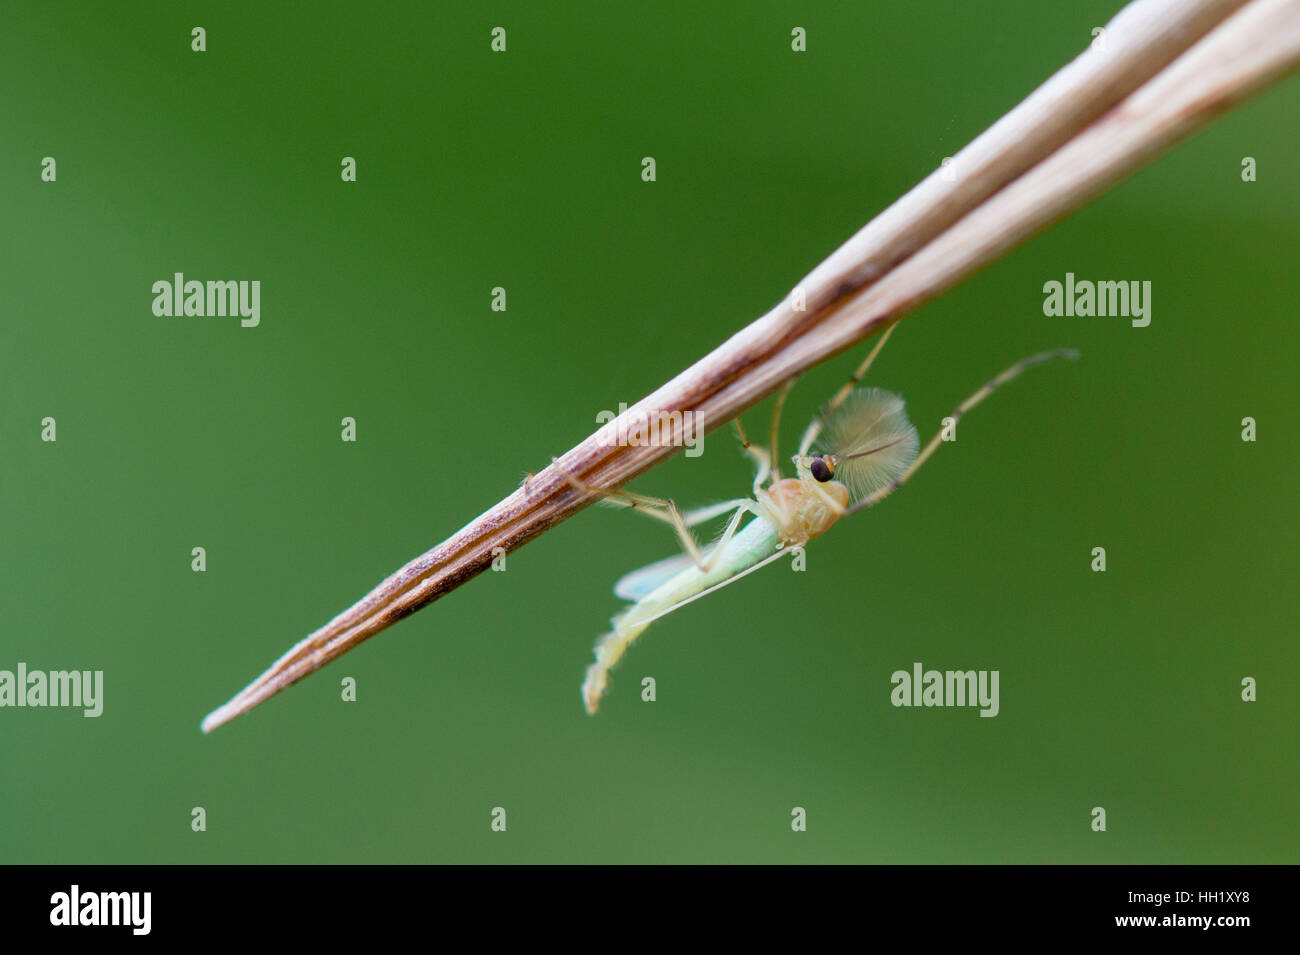 Eine kleine grüne und braune Insekt klammert sich an ein Stück braunen Gras auf einem glatten grünen Hintergrund. Stockfoto